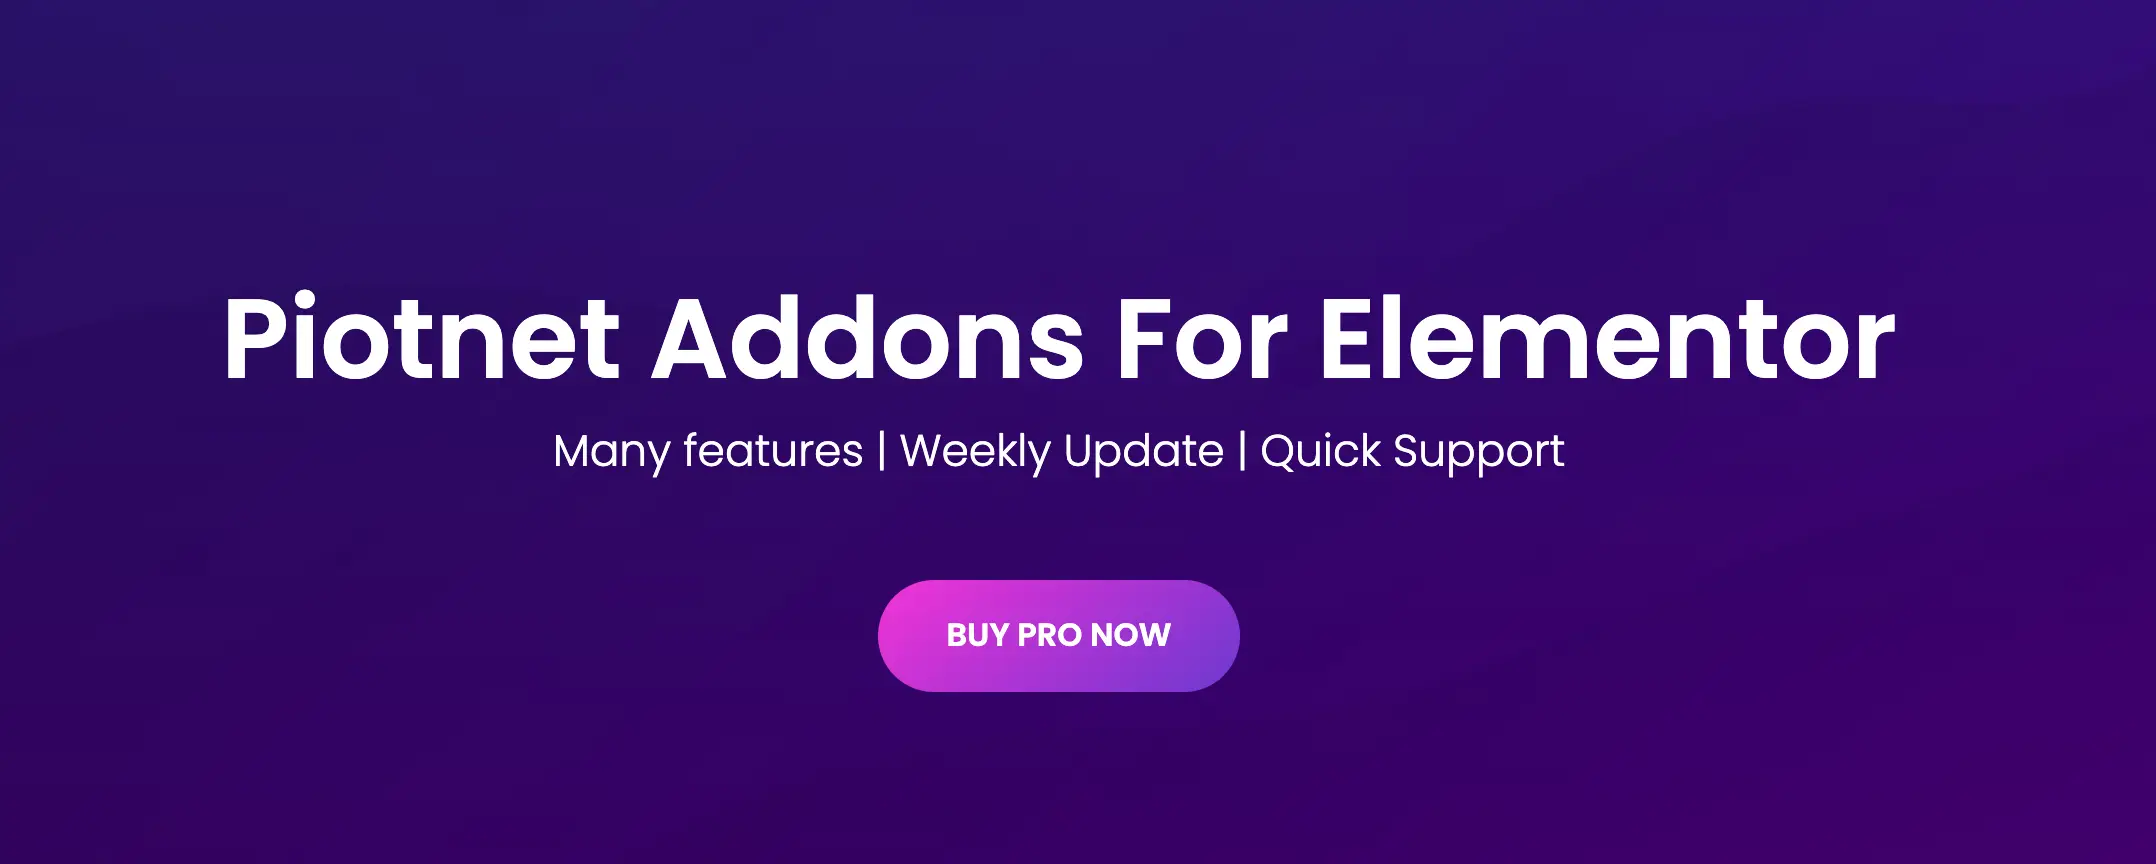 Piotnet Addons Pro 破解专业版Elementor 增强插件 WordPress插件 第1张